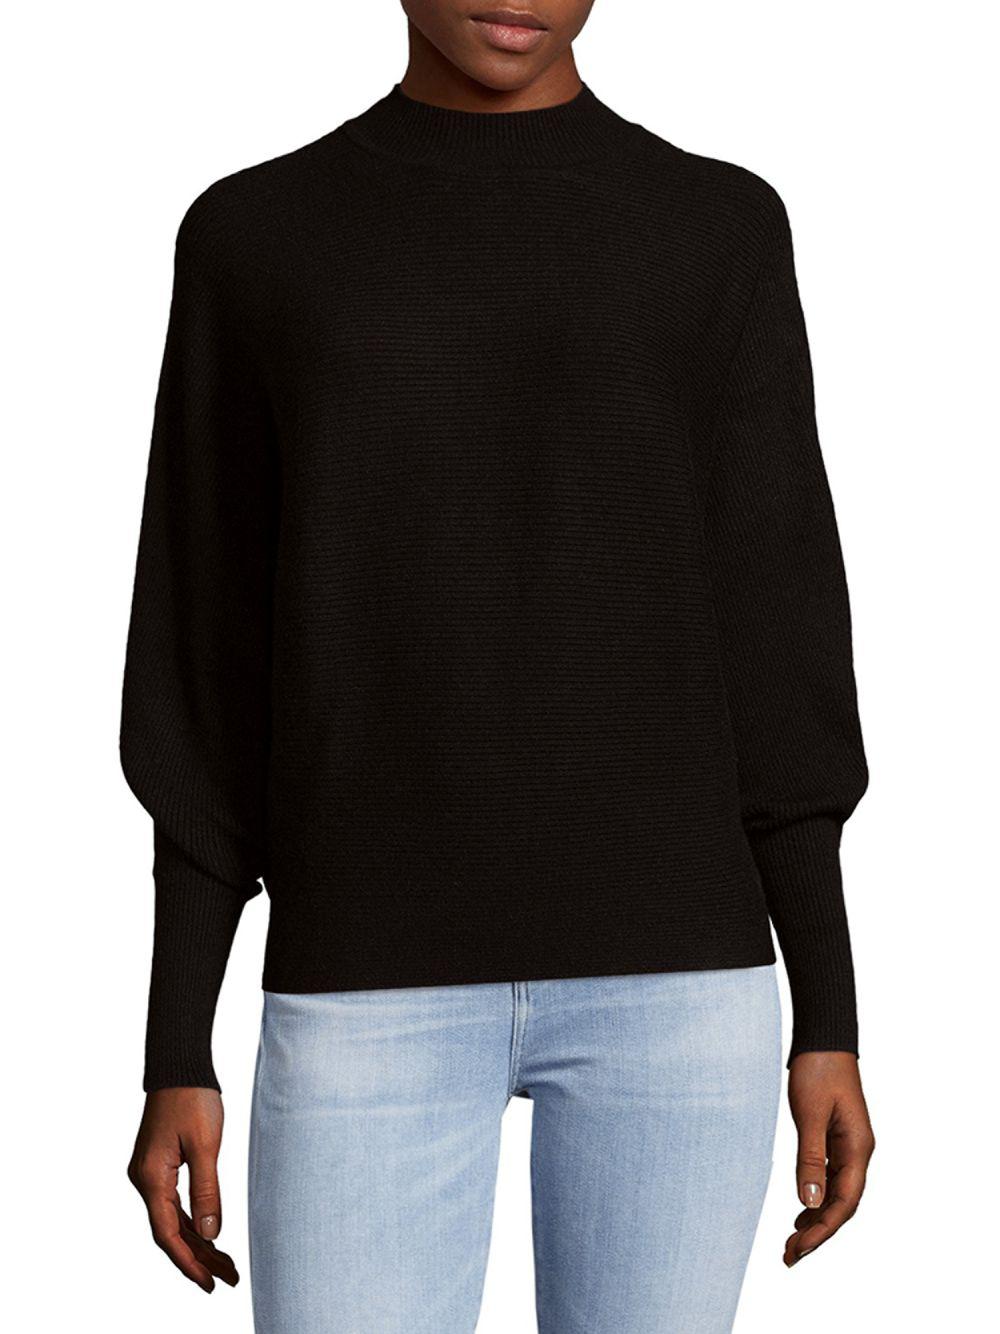 Philosophy Synthetic Dolman Sleeve Sweater in Black - Lyst